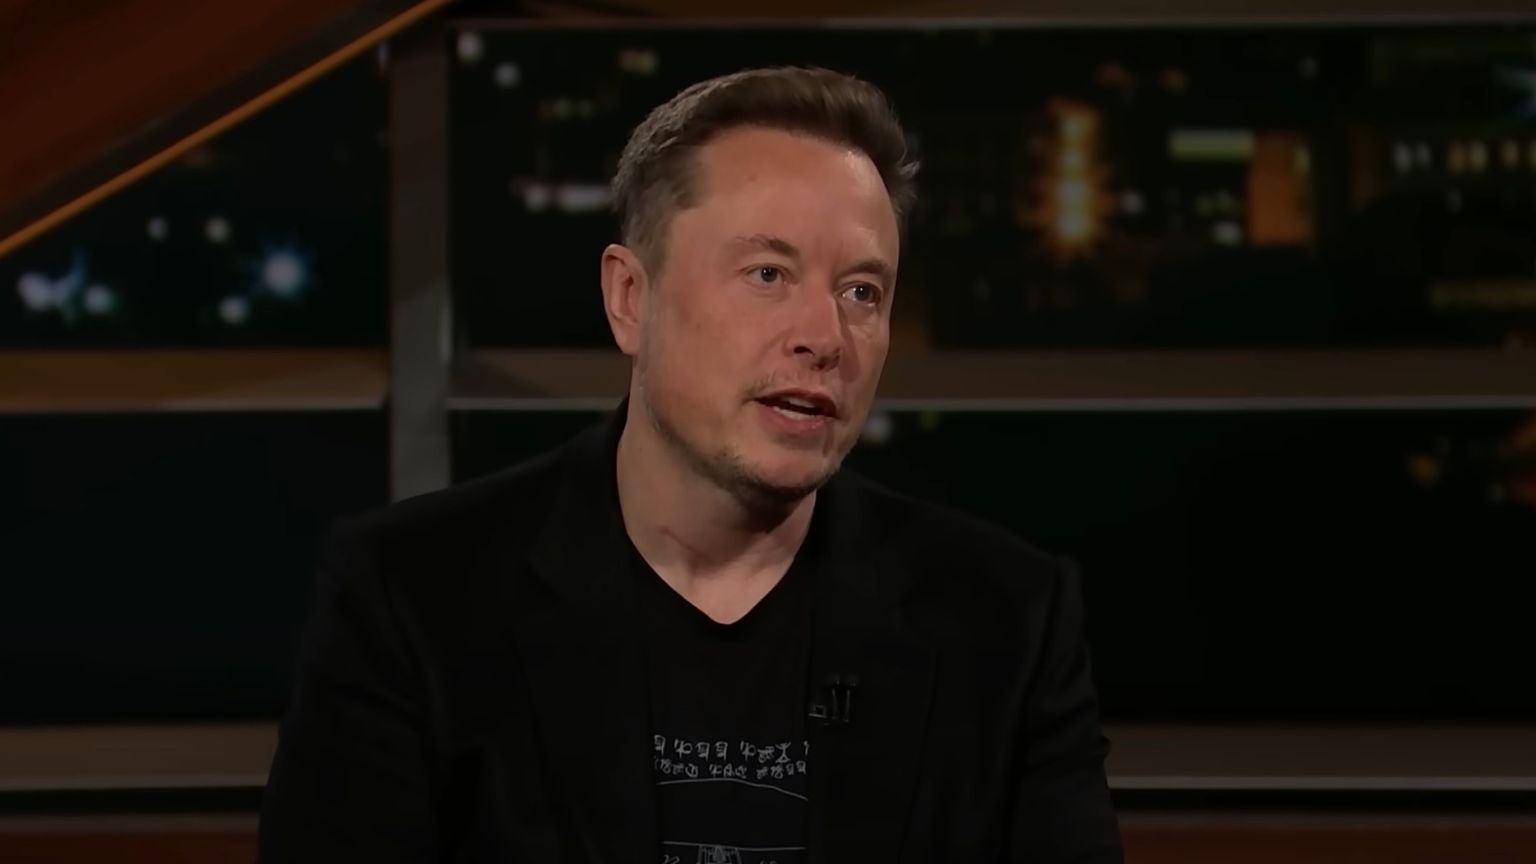 Elon Musk To Fund Legal Challenges To Ireland’s Oppressive “Hate Speech” Legislation